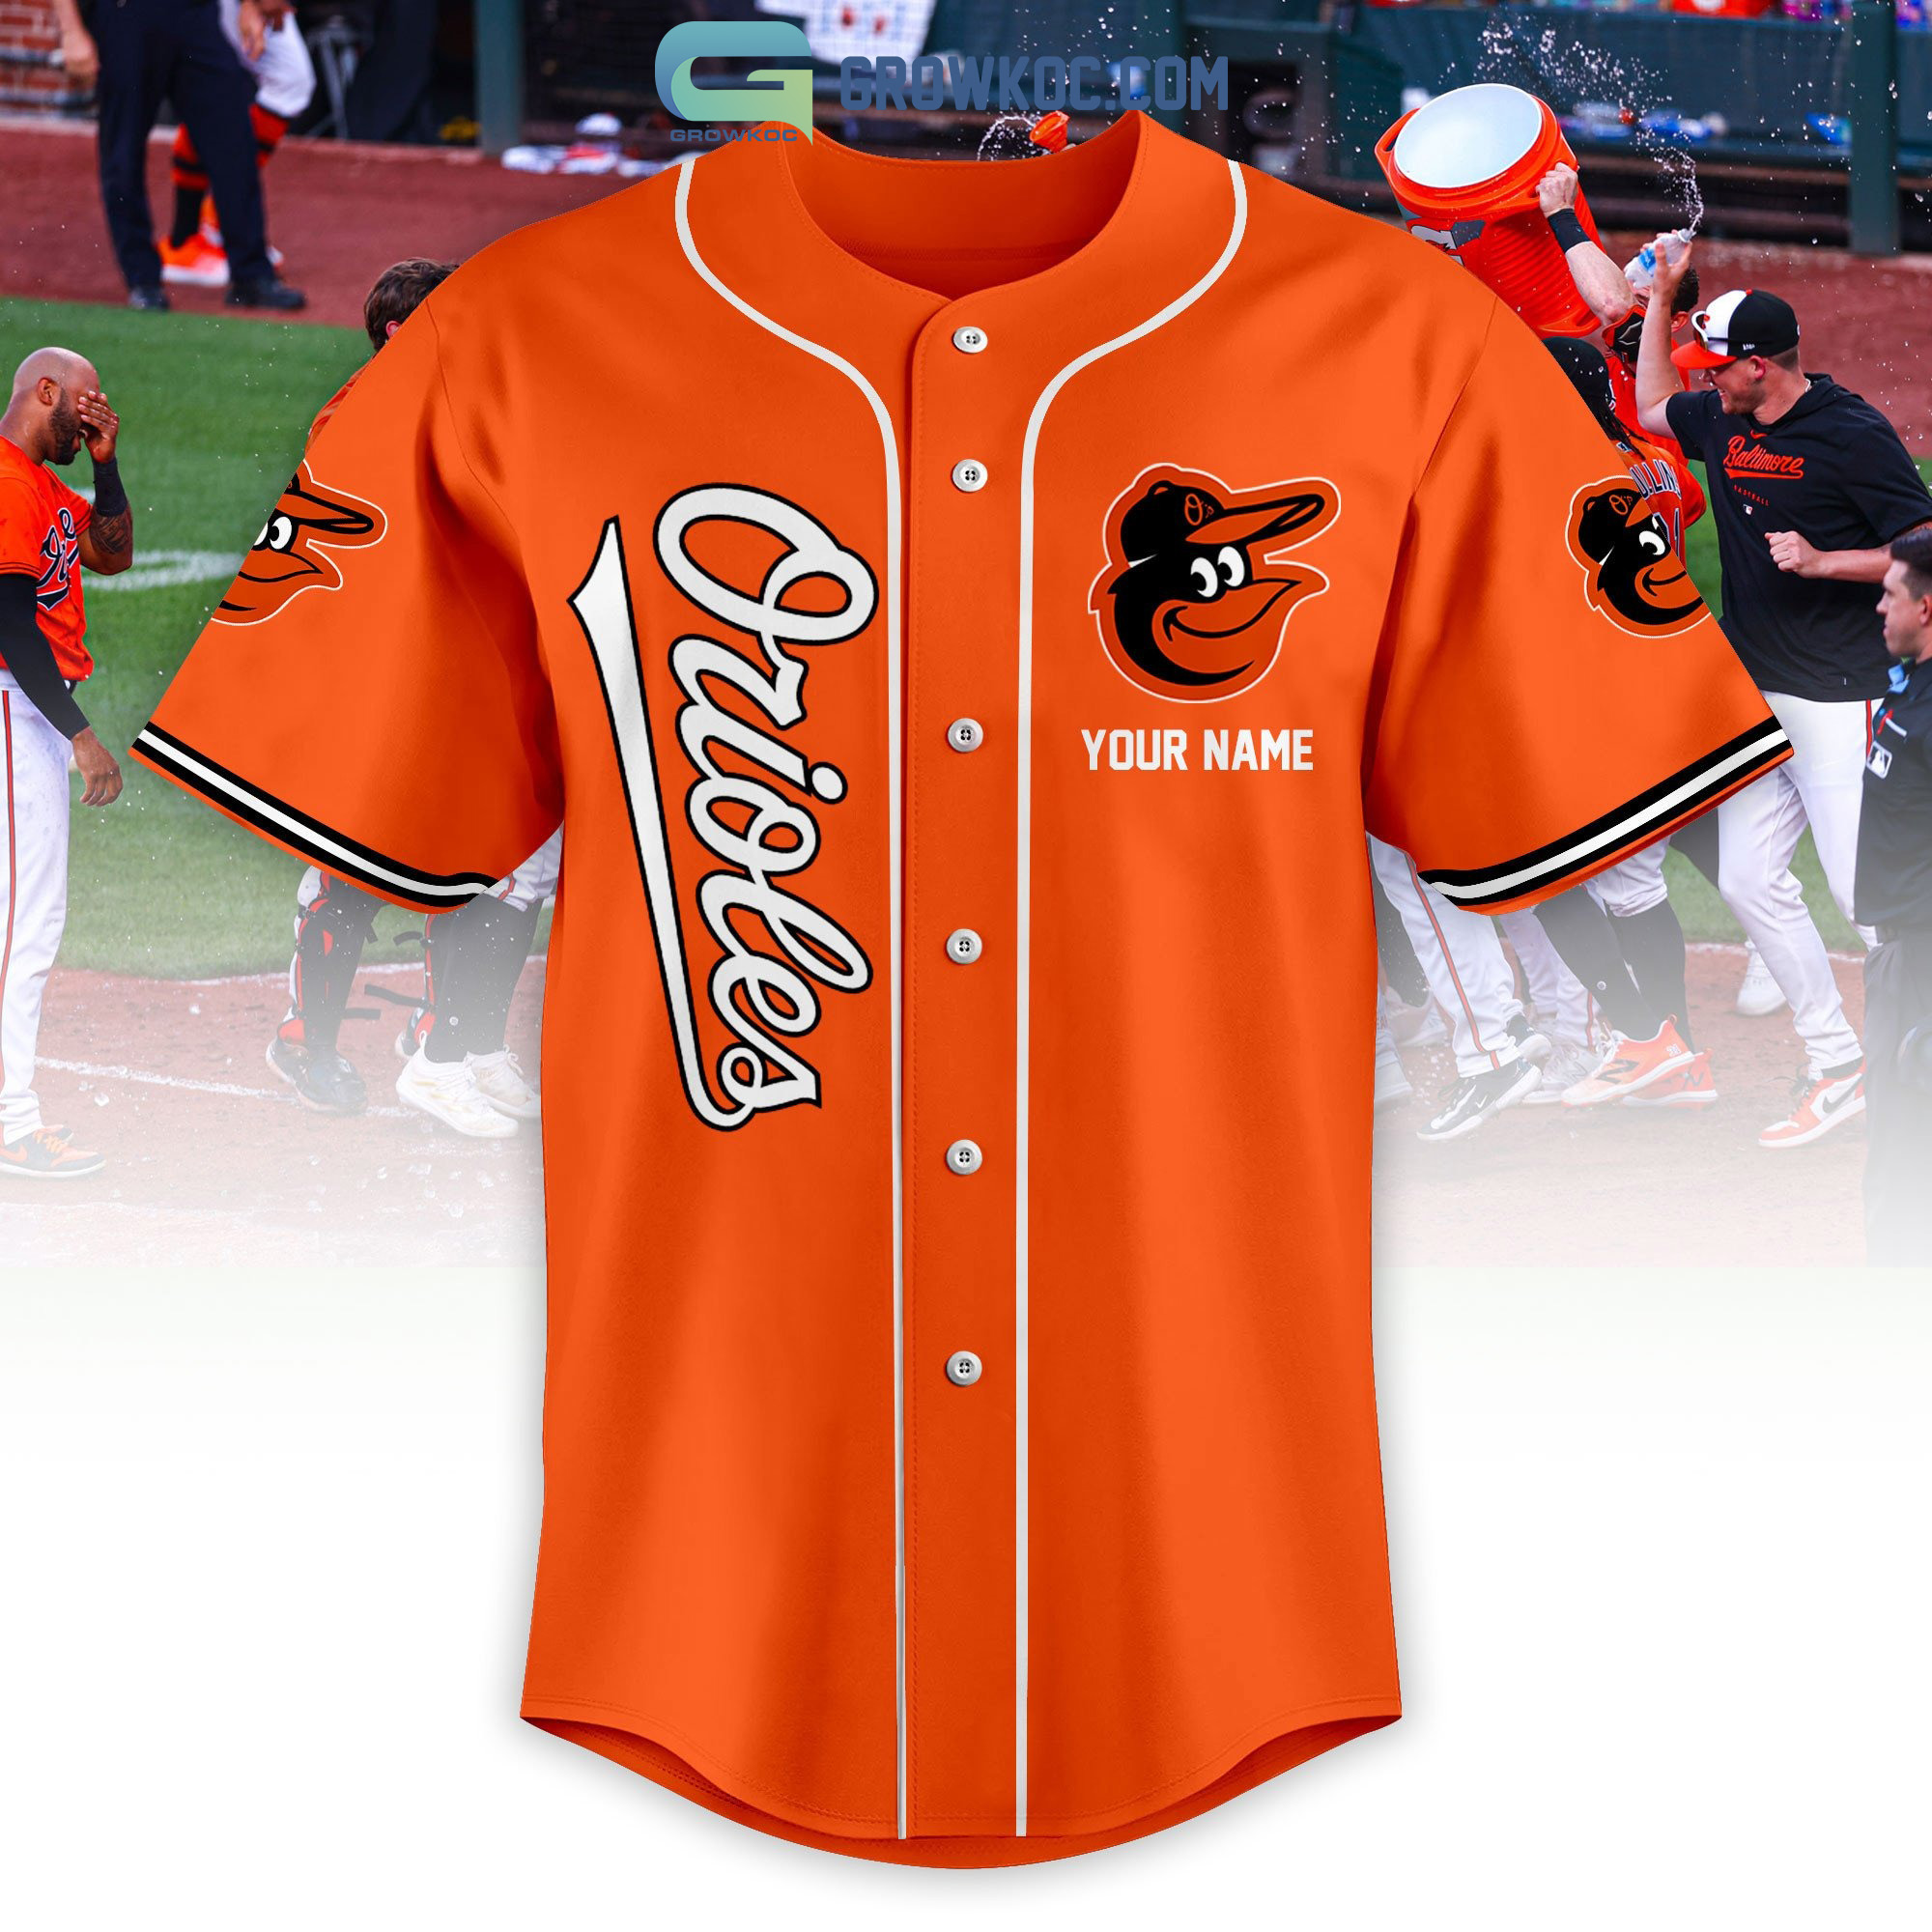 Baltimore Orioles Love Team Personalized Orange Design Baseball